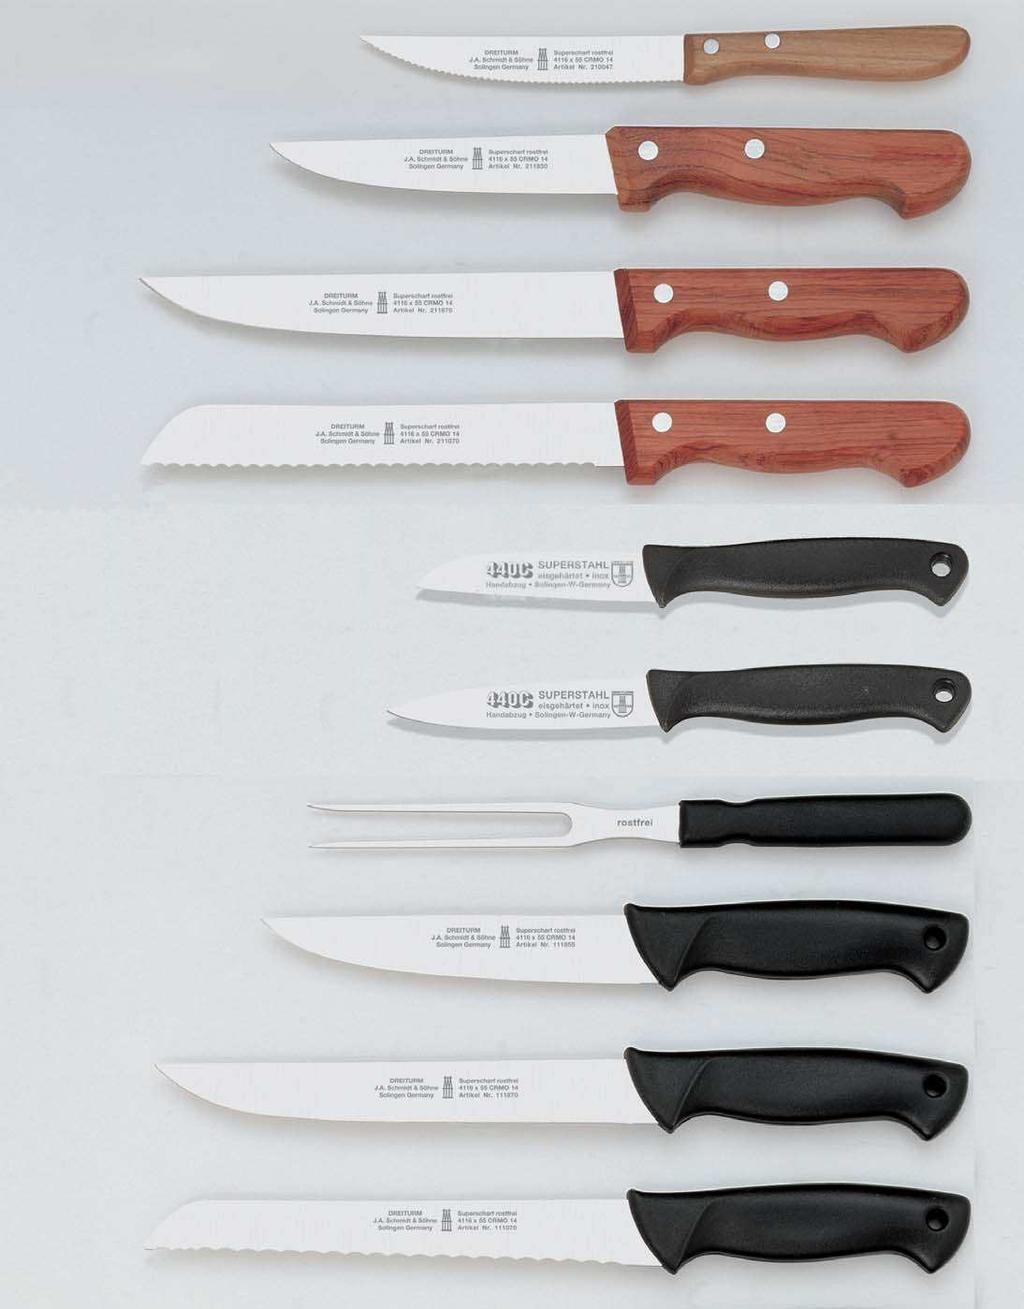 Haushaltmesser Couteaux pour le ménage Household knives Cuchillos para uso domèstico 21 00 47 4 1/2 = 12 cm 21 18 50 5 = 13 cm 21 18 70 7 = 18 cm 21